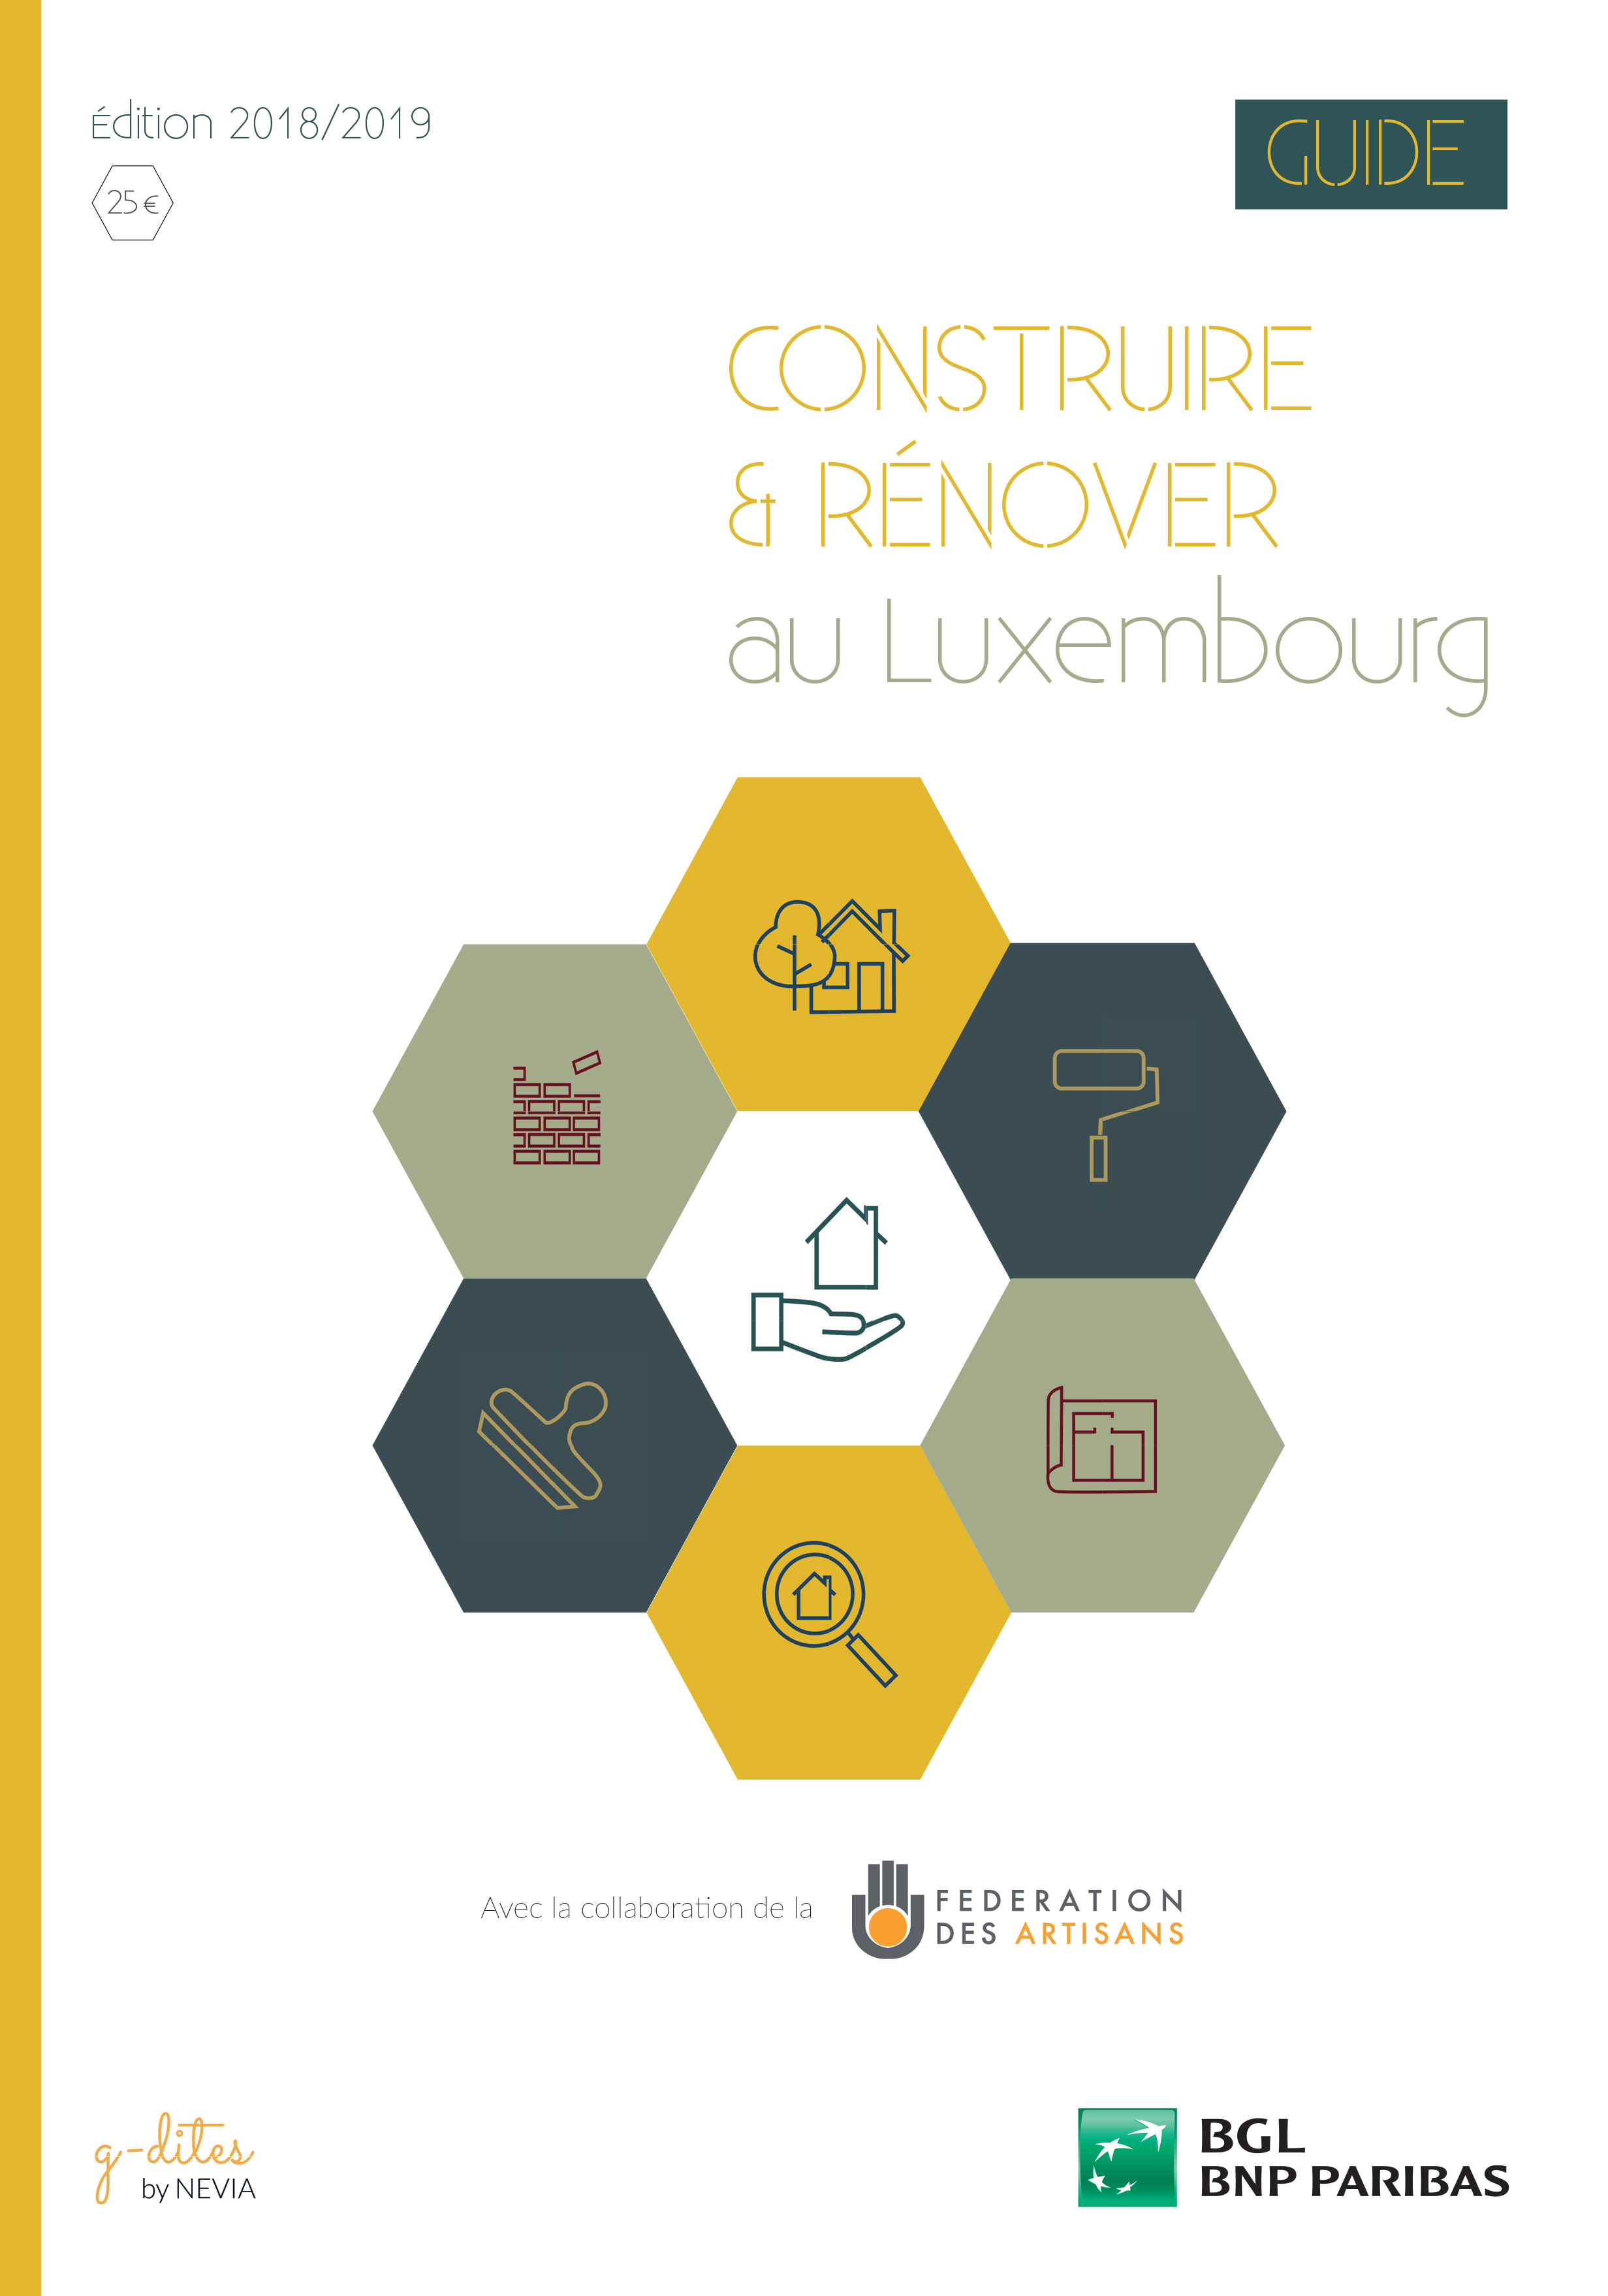 Guide Construire et Rénover au Luxembourg 2018-2019